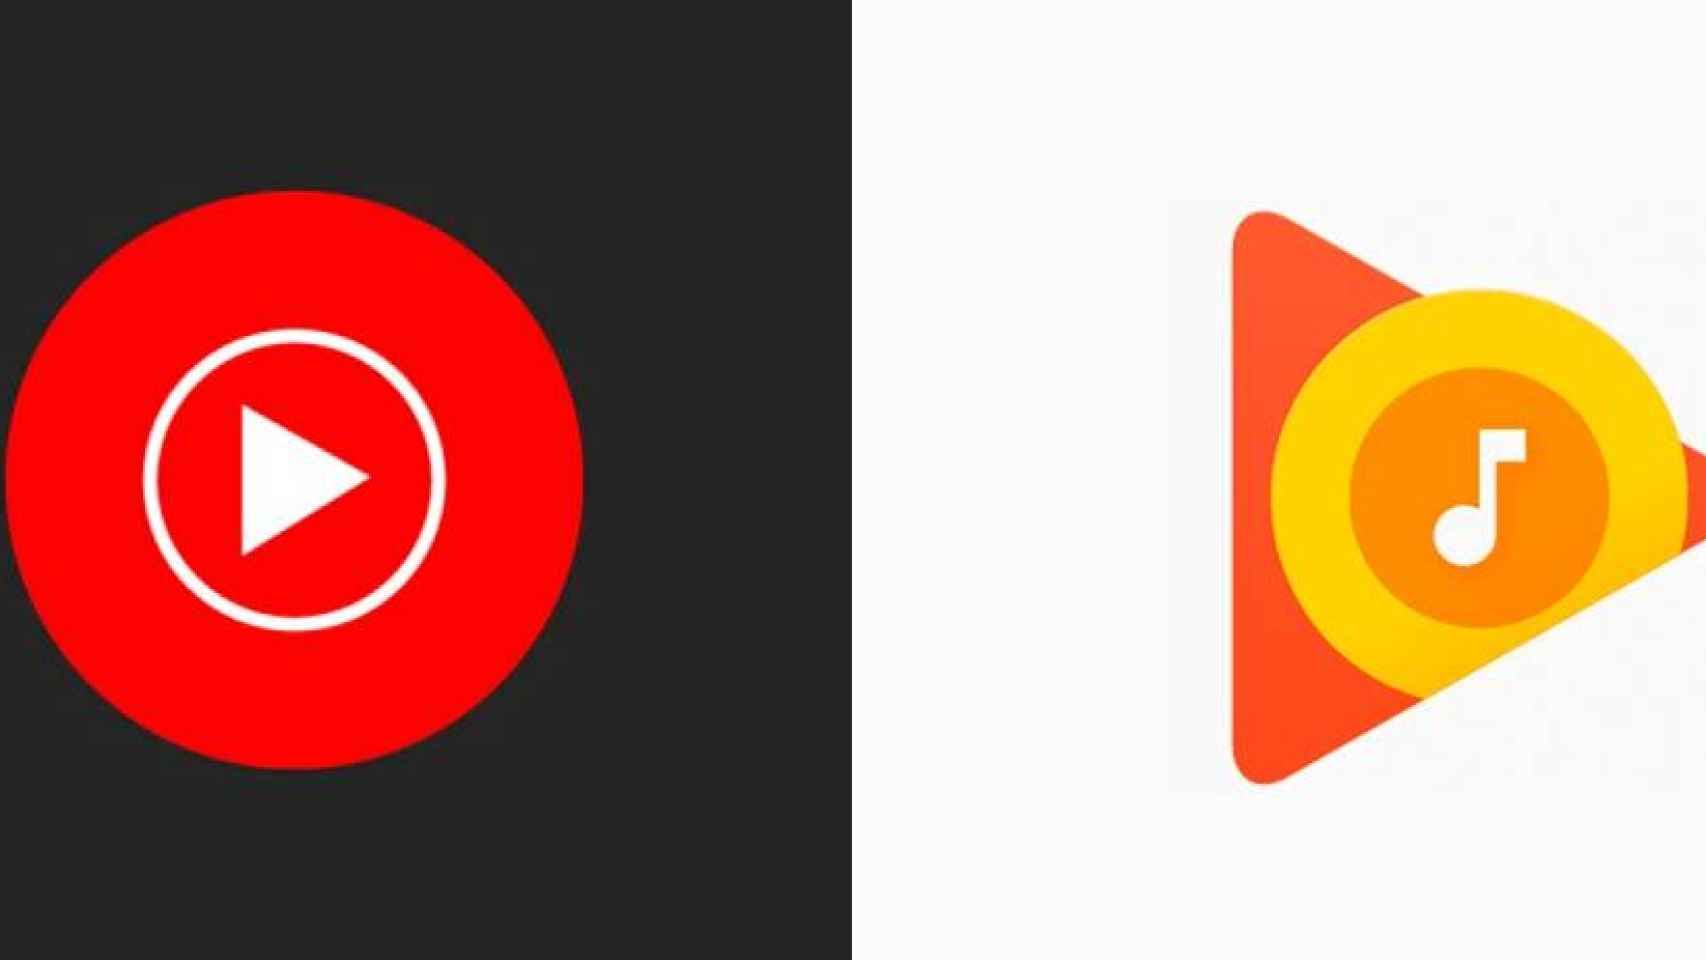 Google Play Music cierra su tienda de música: cómo descargar la que compraste